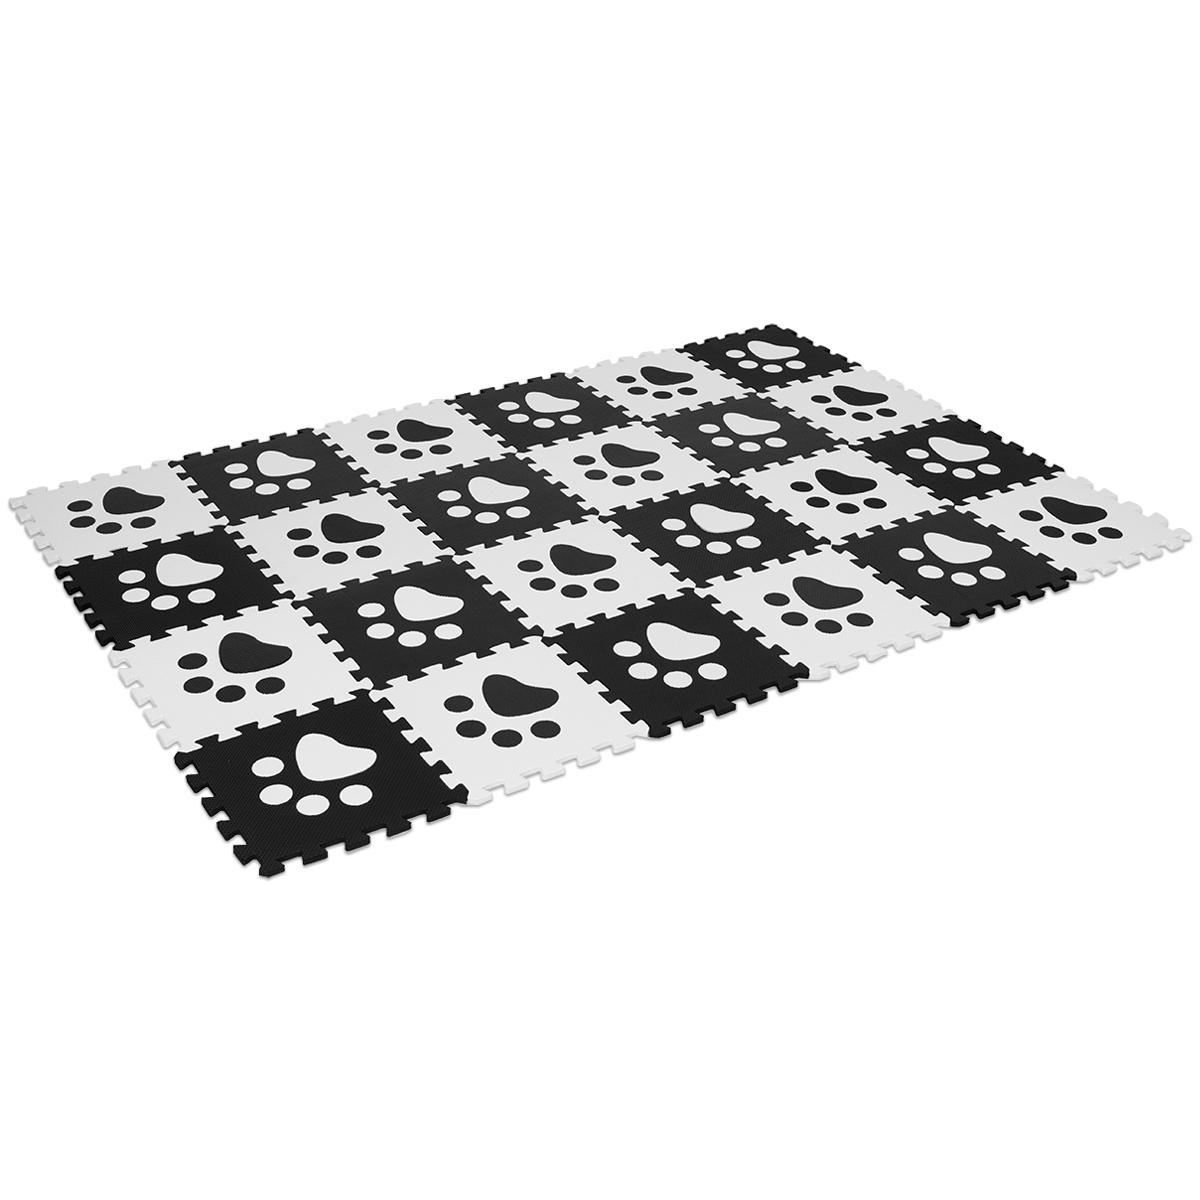 24 Stk Puzzlematten Puzzle Kinderteppich Spielteppich